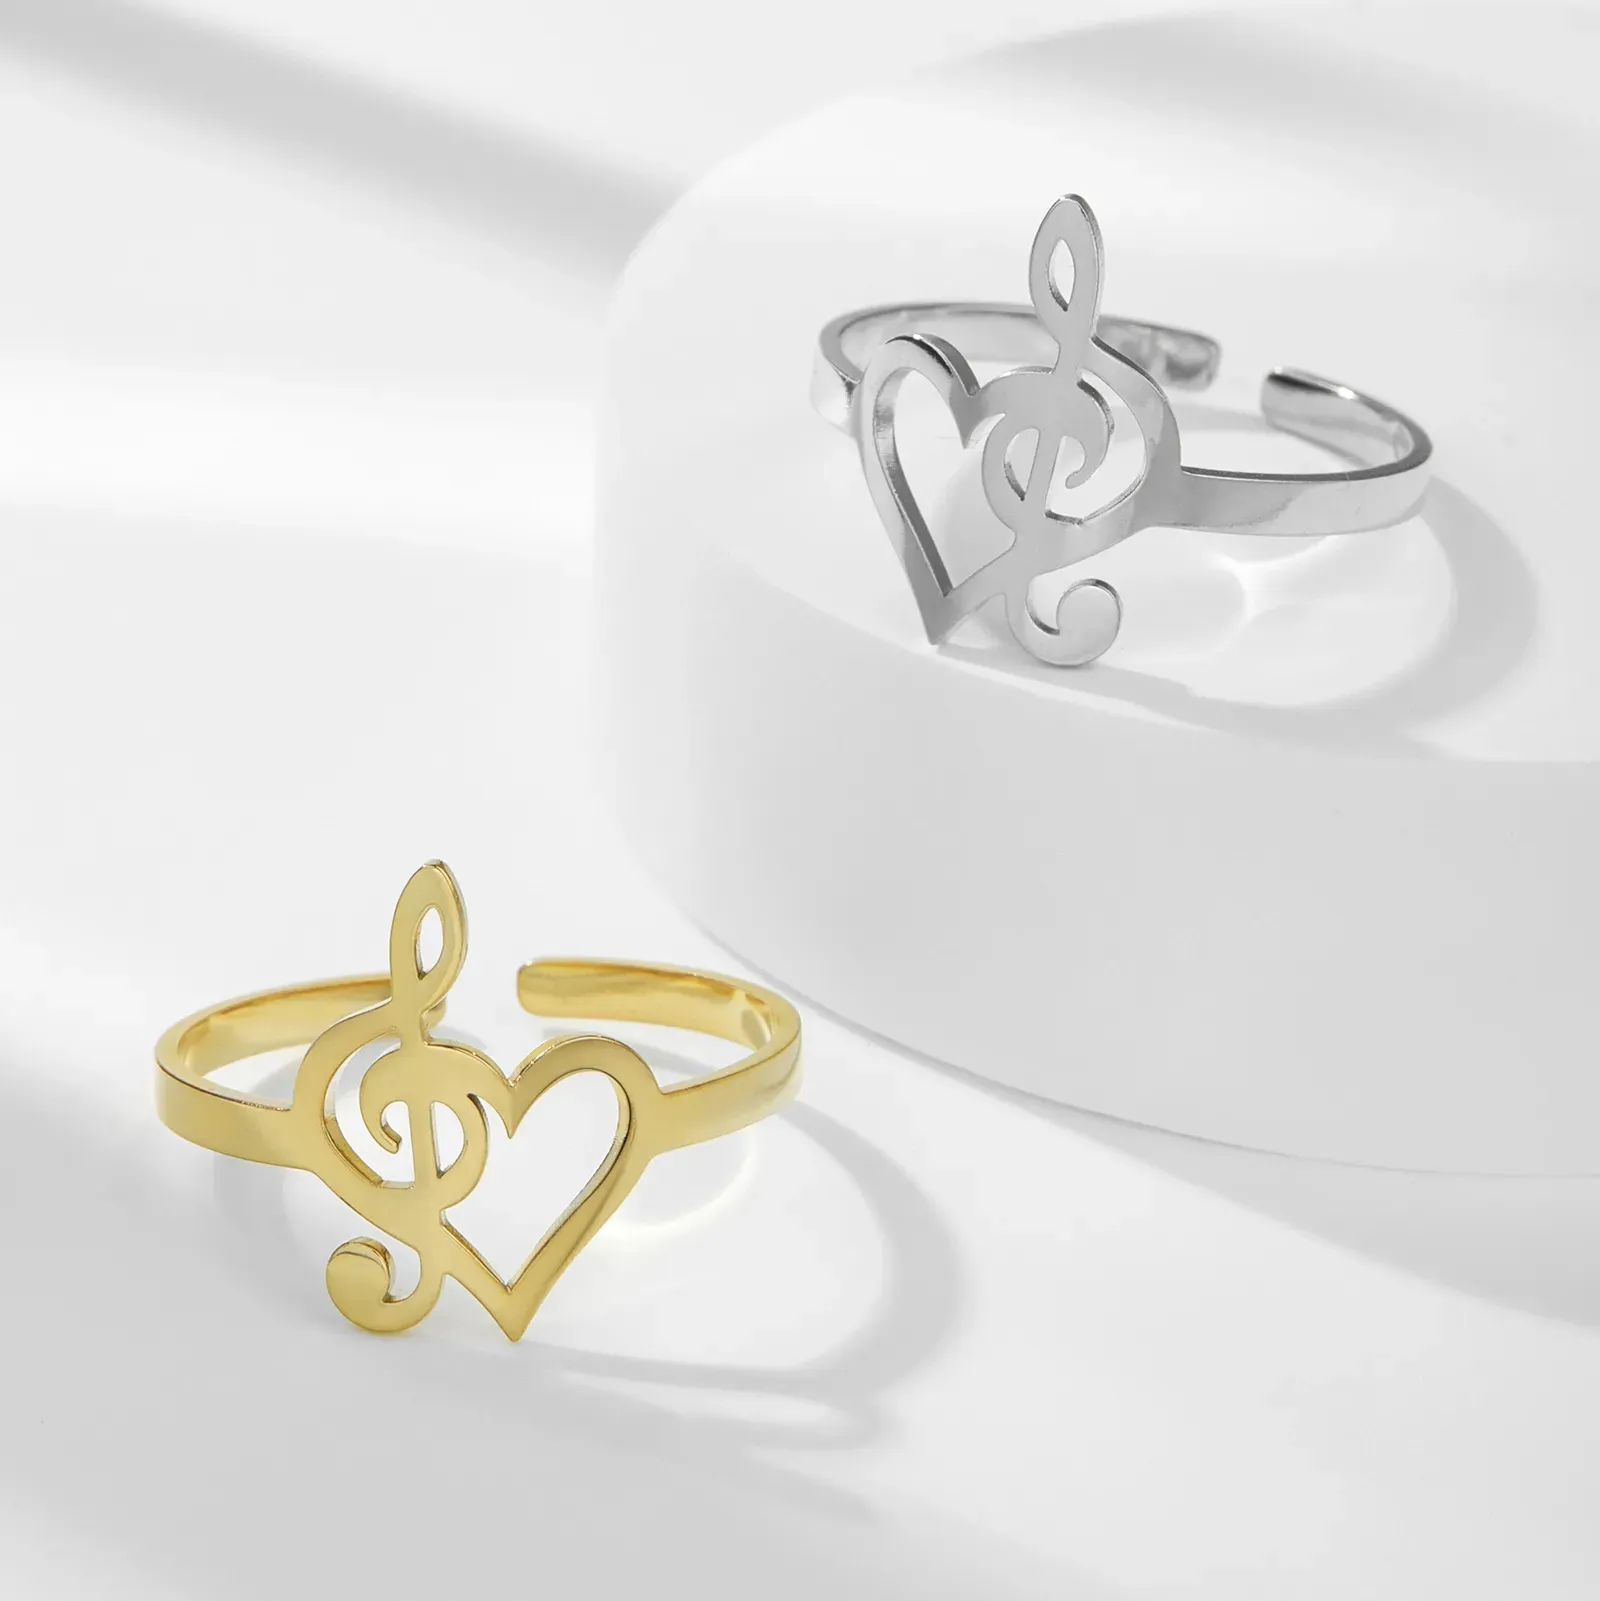 Elegante anillo abierto de acero inoxidable corazón nota Musical ajustable dedo accesorios nueva moda joyería especial regalo para mujeres